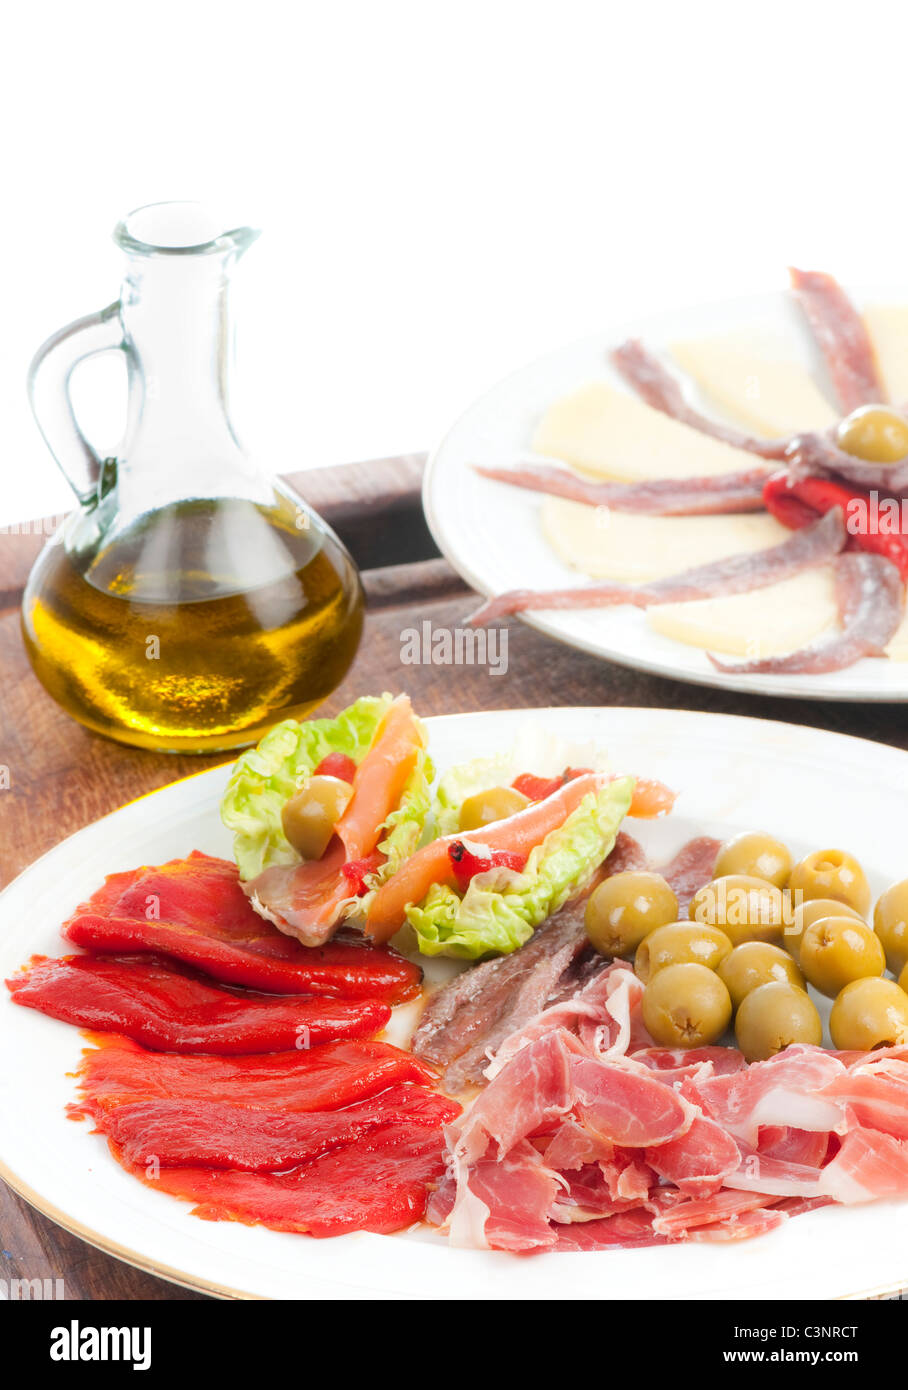 Las tapas españolas con aceite de oliva, el jamón serrano, el queso asado, los pimientos del piquillo, anchoas y aceitunas lechuga sobre una tabla de madera. Foto de stock